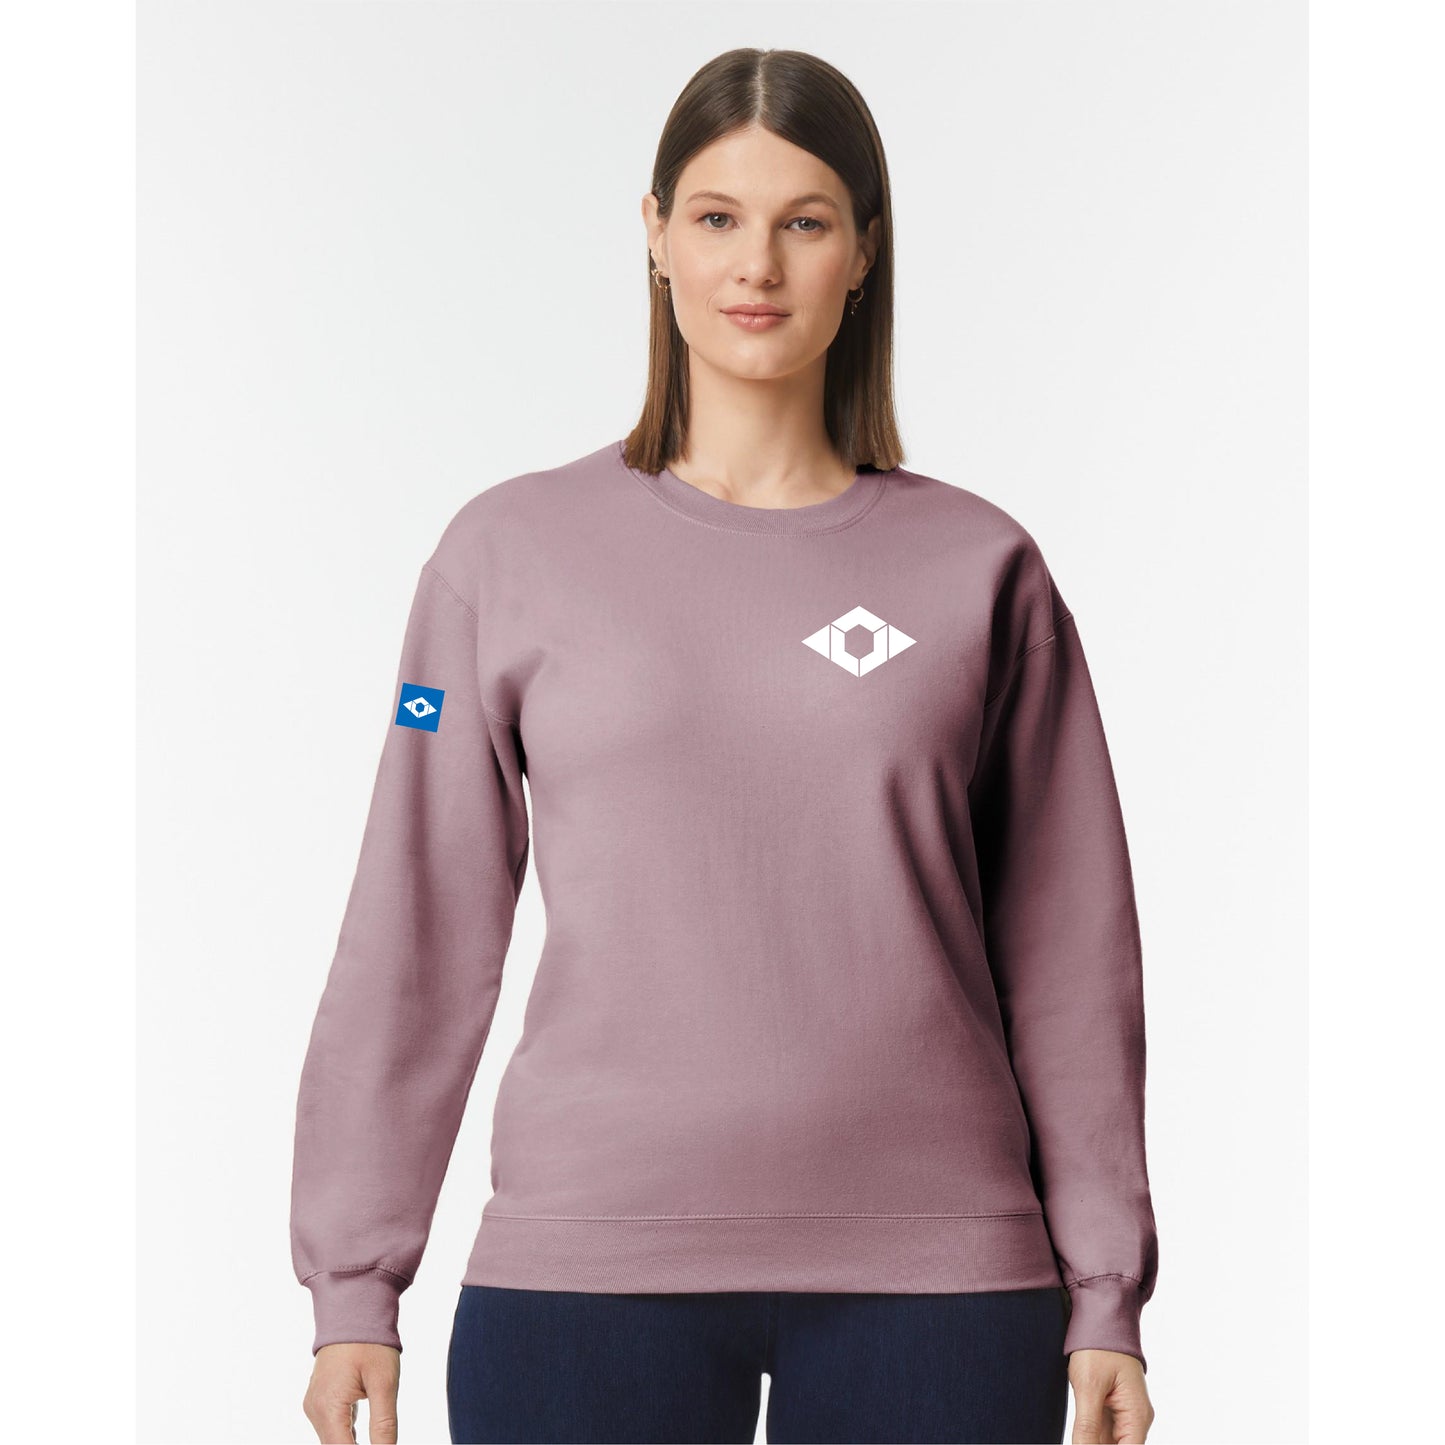 Union of Forces Identity Sweatshirt